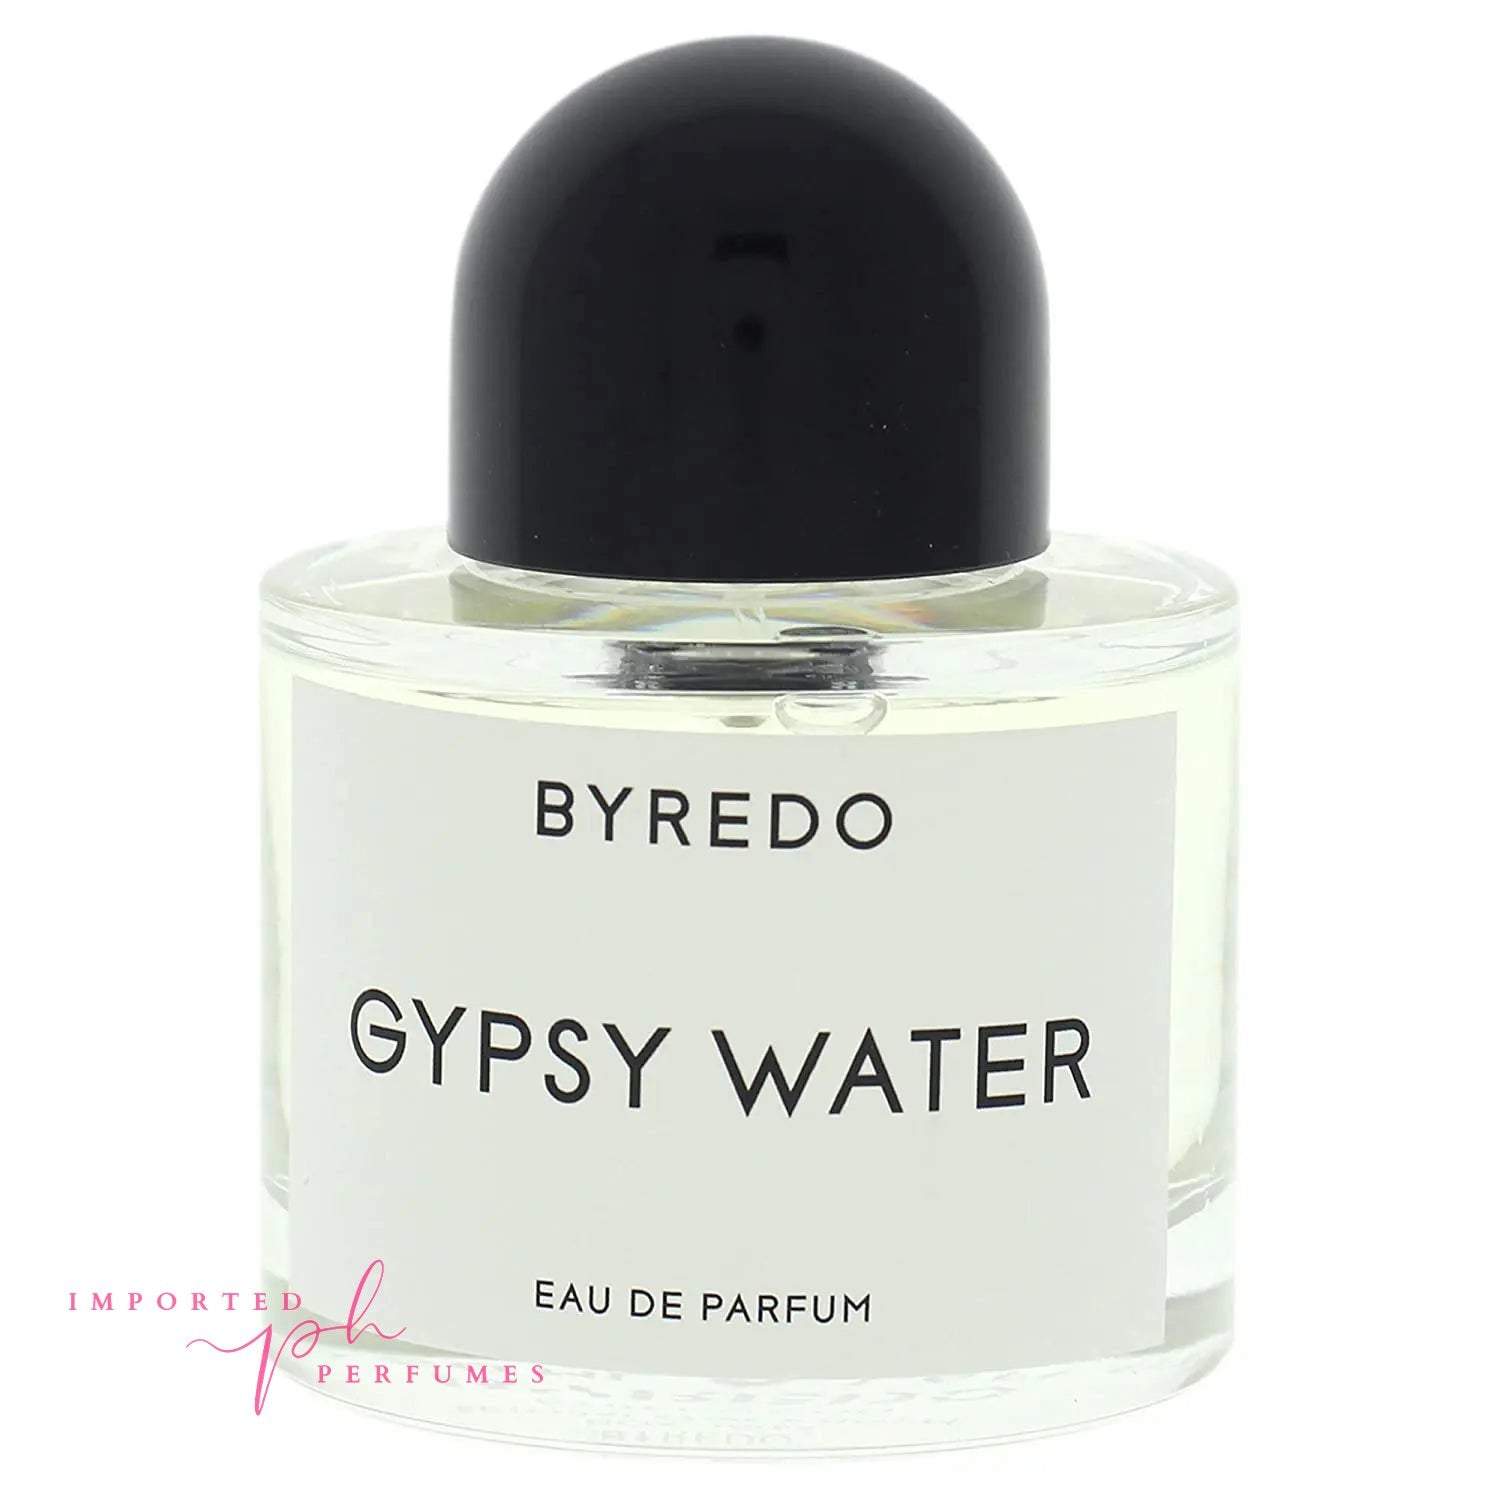 Byredo Gypsy Water by Byredo Eau De Parfum 100ml-Imported Perfumes Co-Byredo,Gypsy,men,women